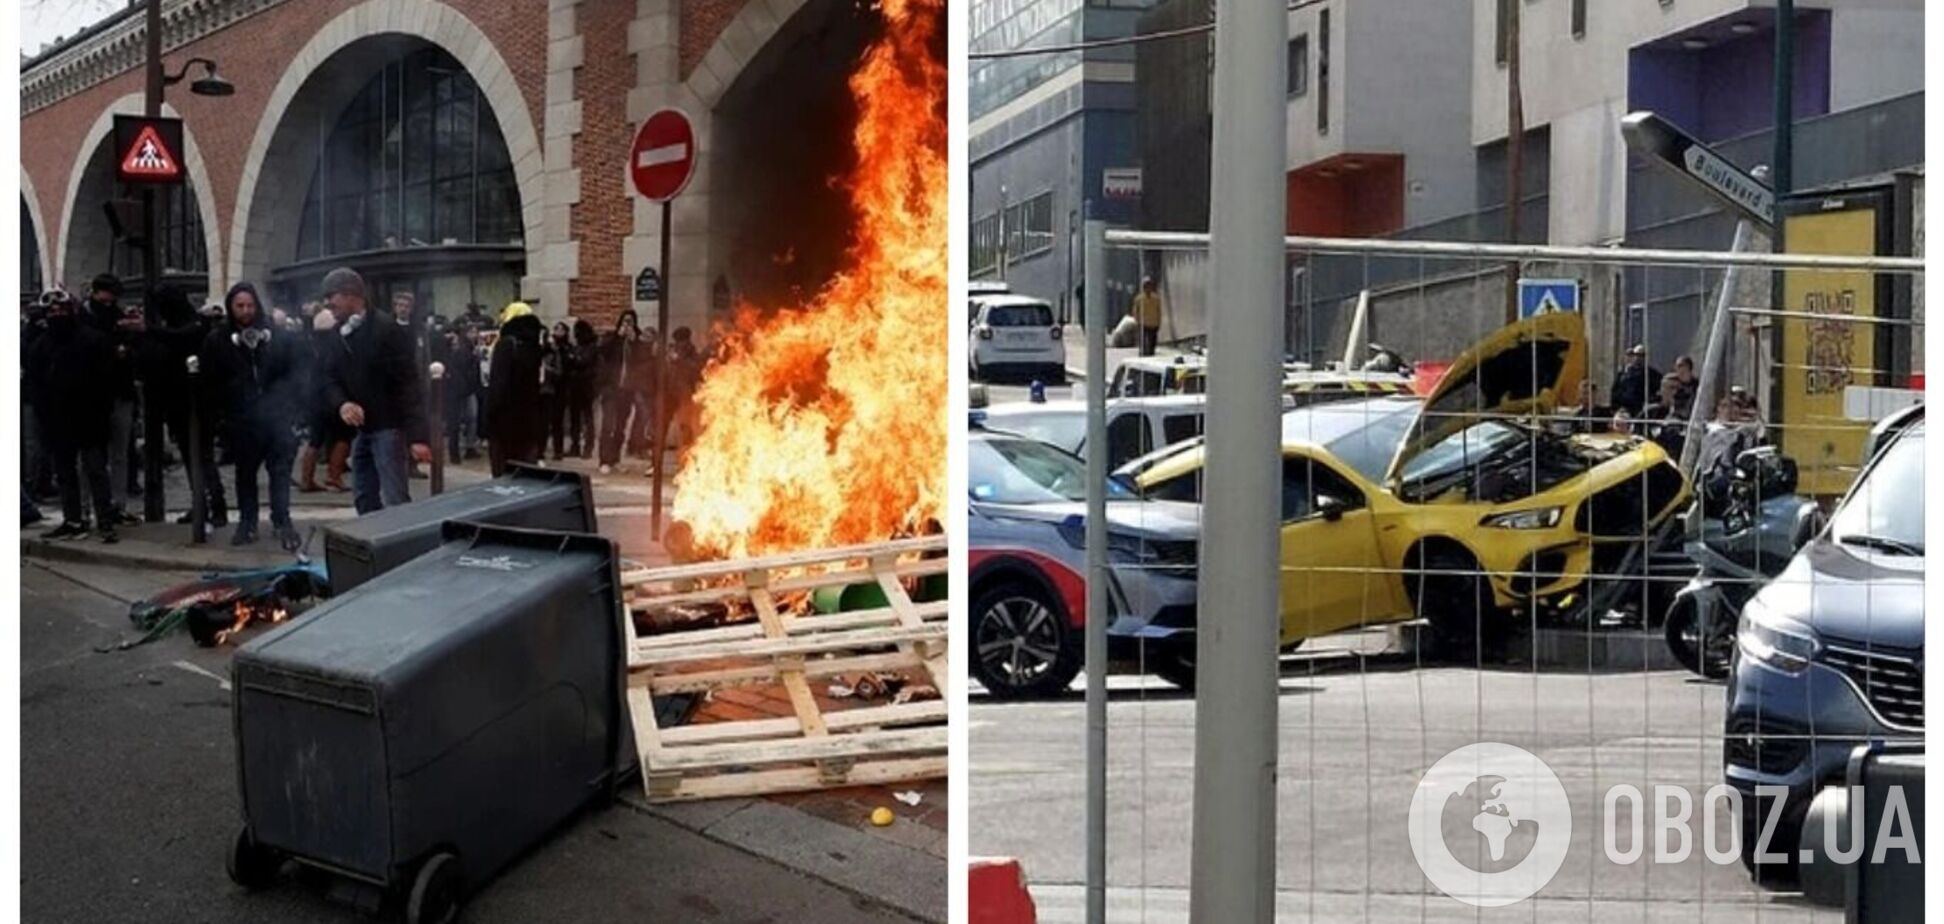 Во Франции вспыхнули акции протеста после убийства полицией подростка, отказавшегося остановить автомобиль. Фото и видео